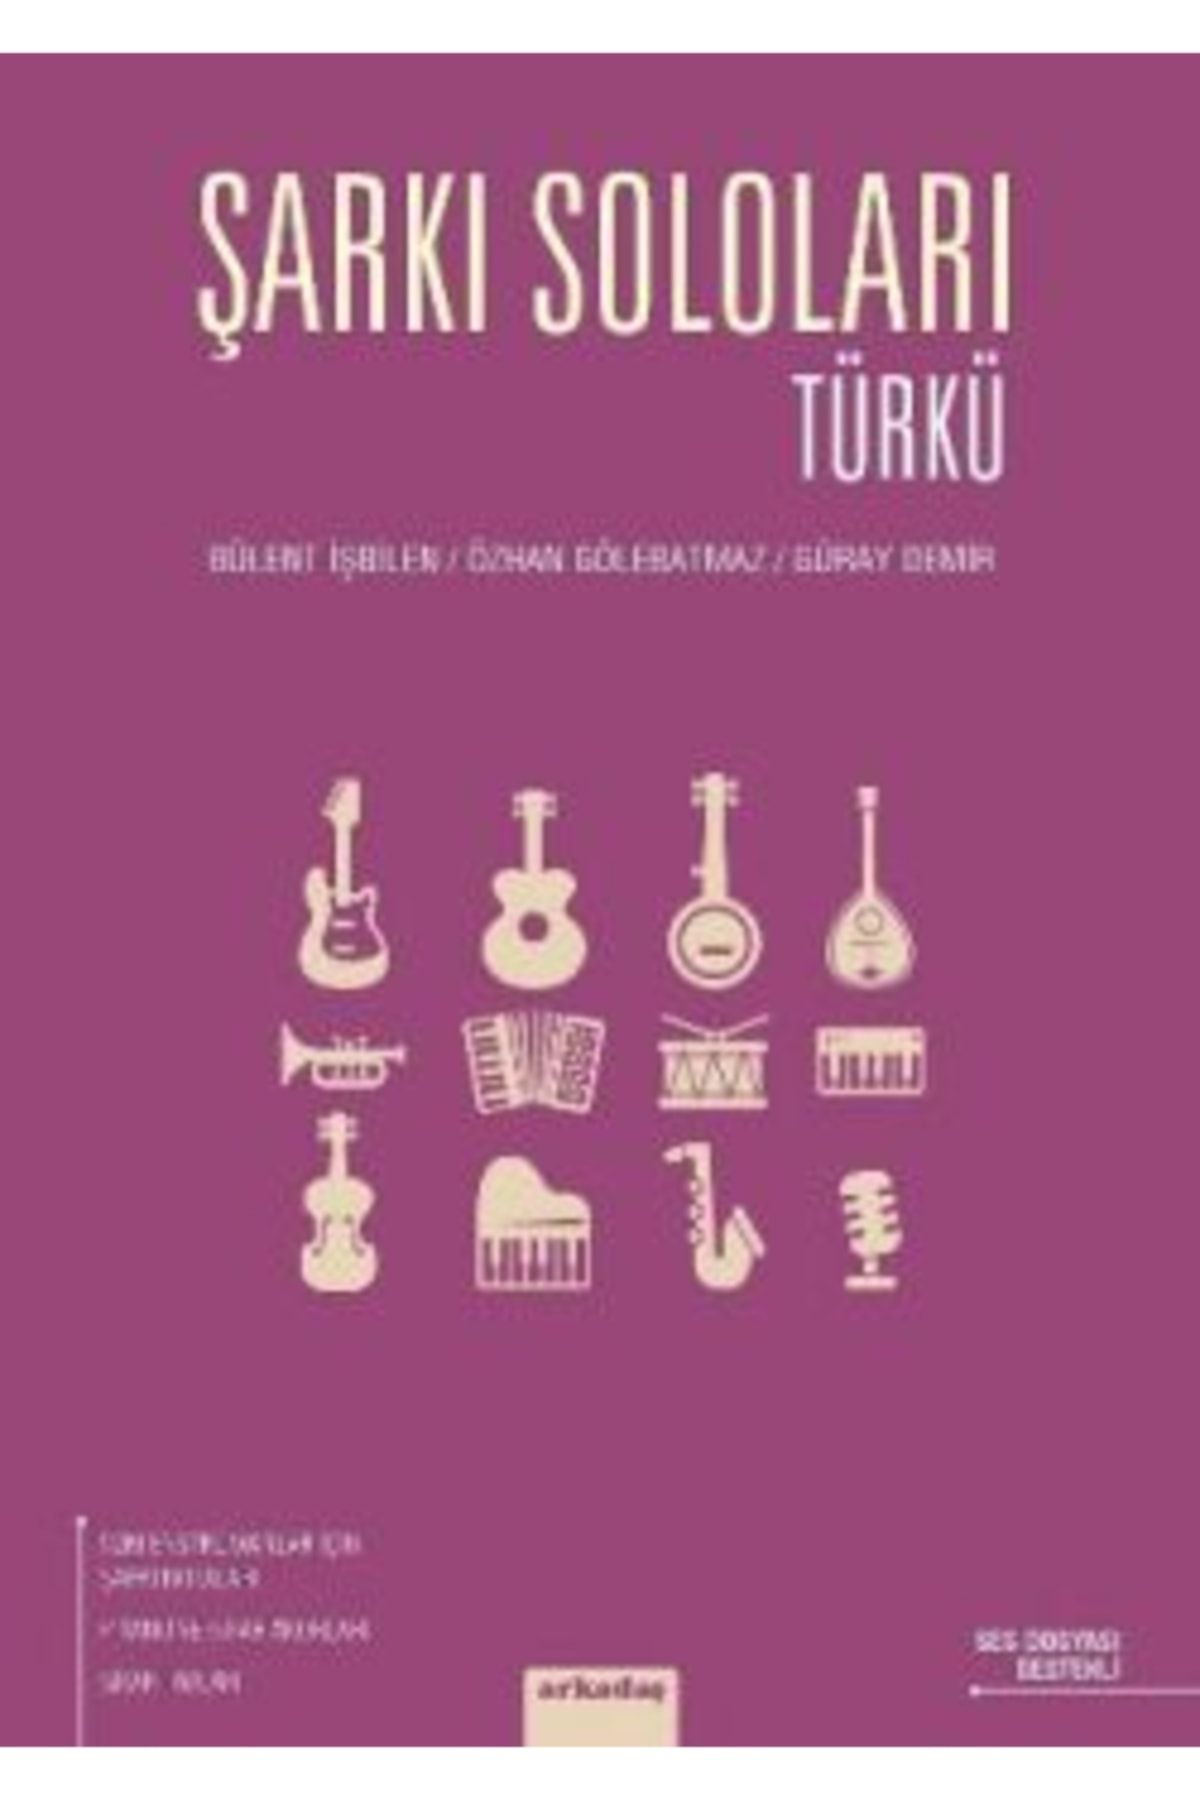 Arkadaş Yayıncılık Şarkı Soloları: Türkü